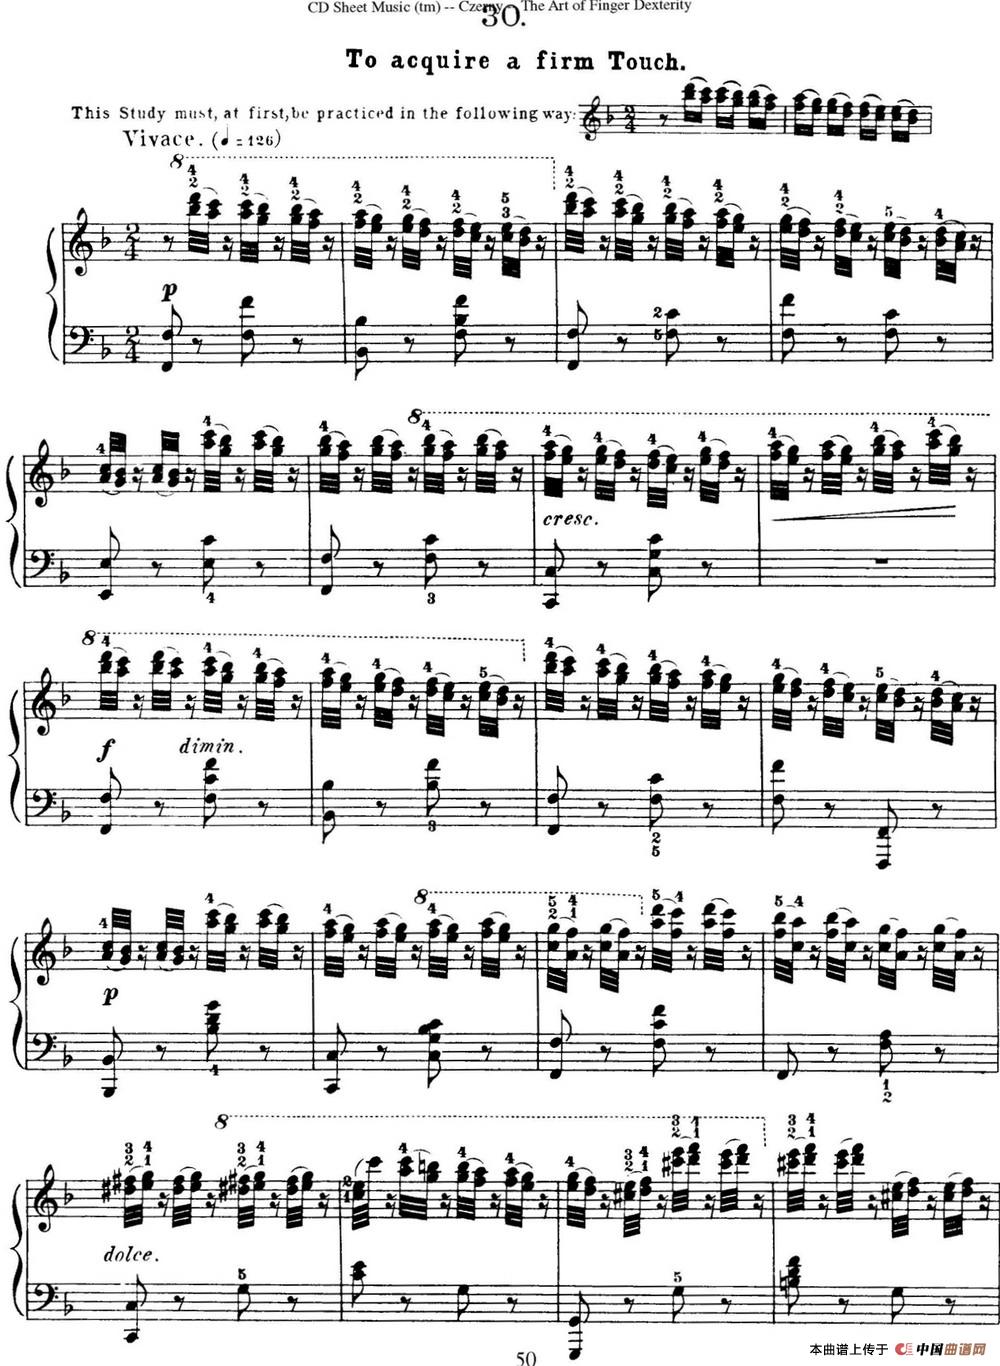 50首车尔尼Op.740钢琴手指灵巧技术练习曲（NO.30）(1)_C740_页面_109.jpg